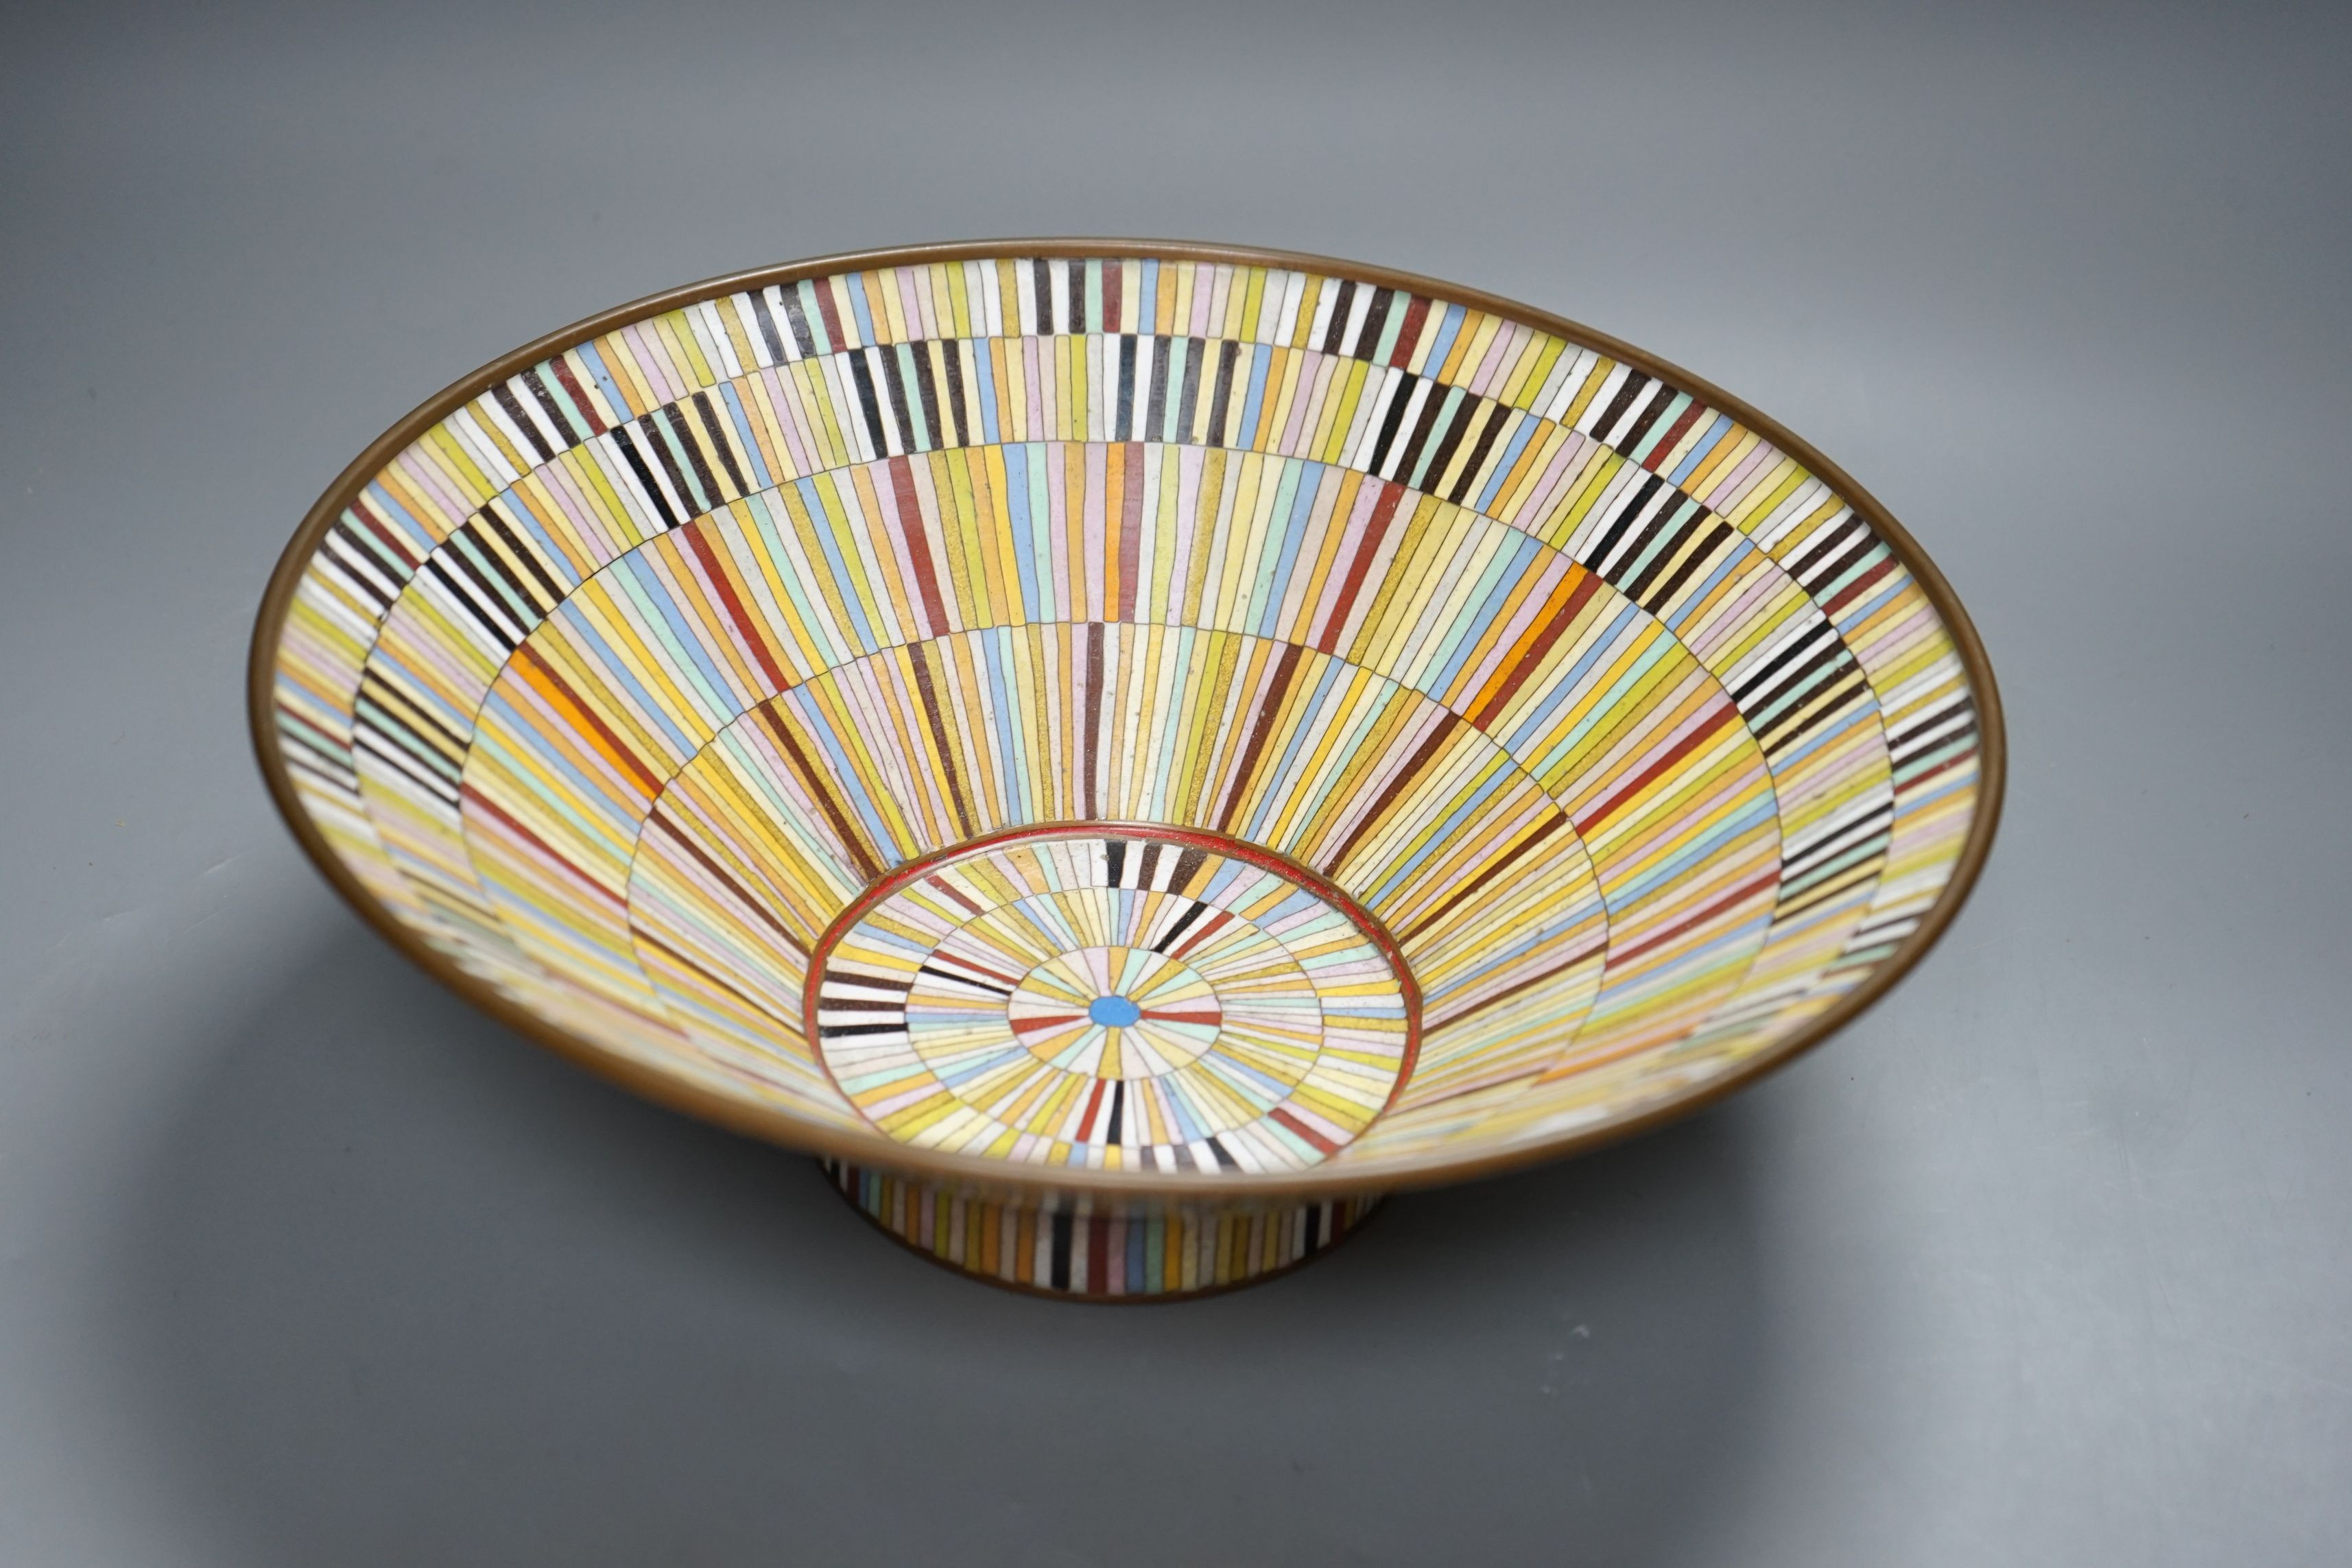 An Art Deco style polychrome cloisonné enamel bowl, 33cm diameter